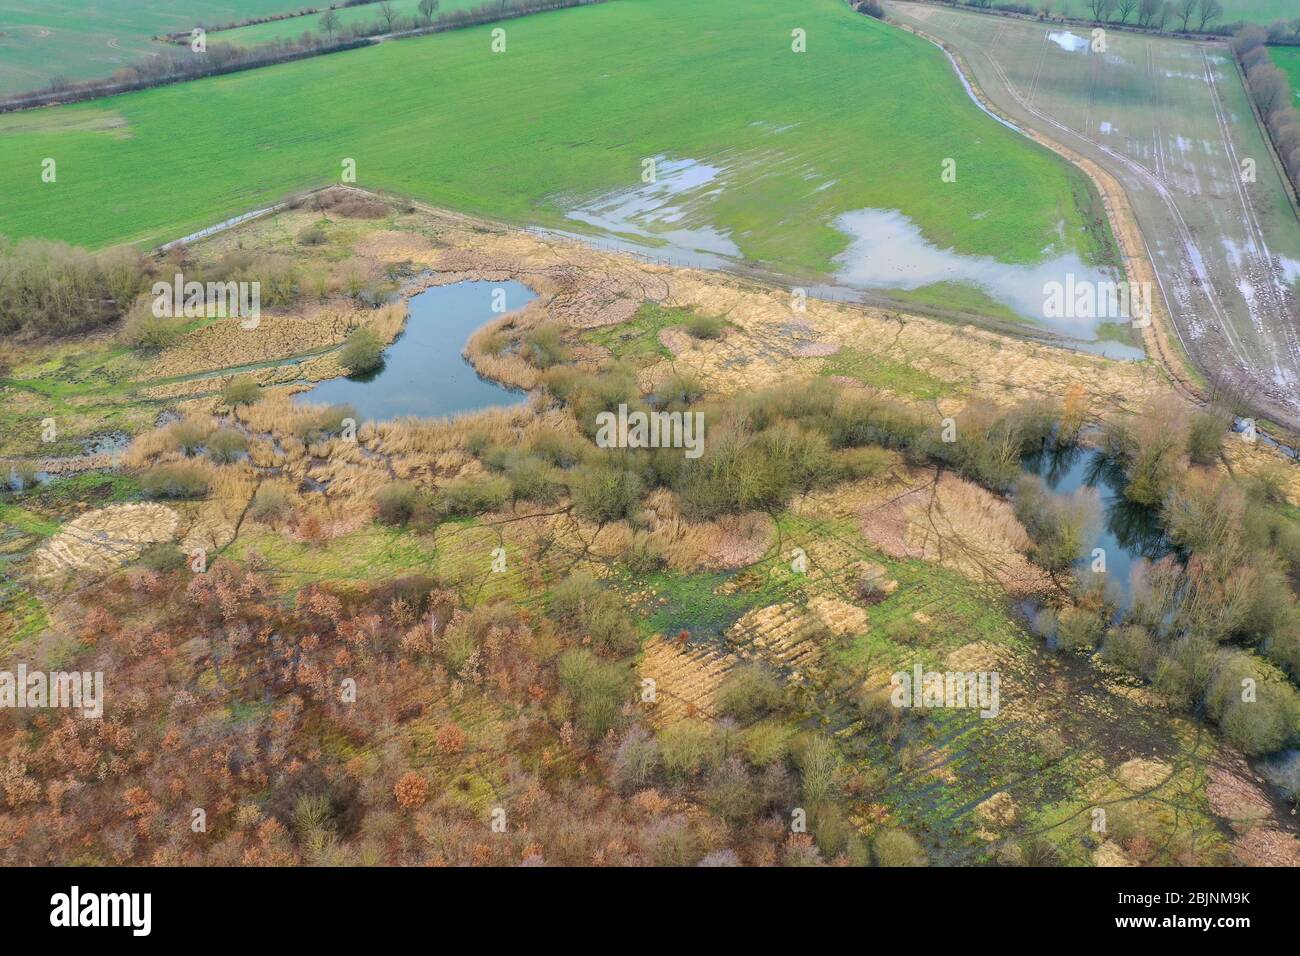 Proyecto de conservación de la naturaleza inundada Steinbruchwiesen en febrero, Alemania, Schleswig-Holstein, Ritzerau Foto de stock